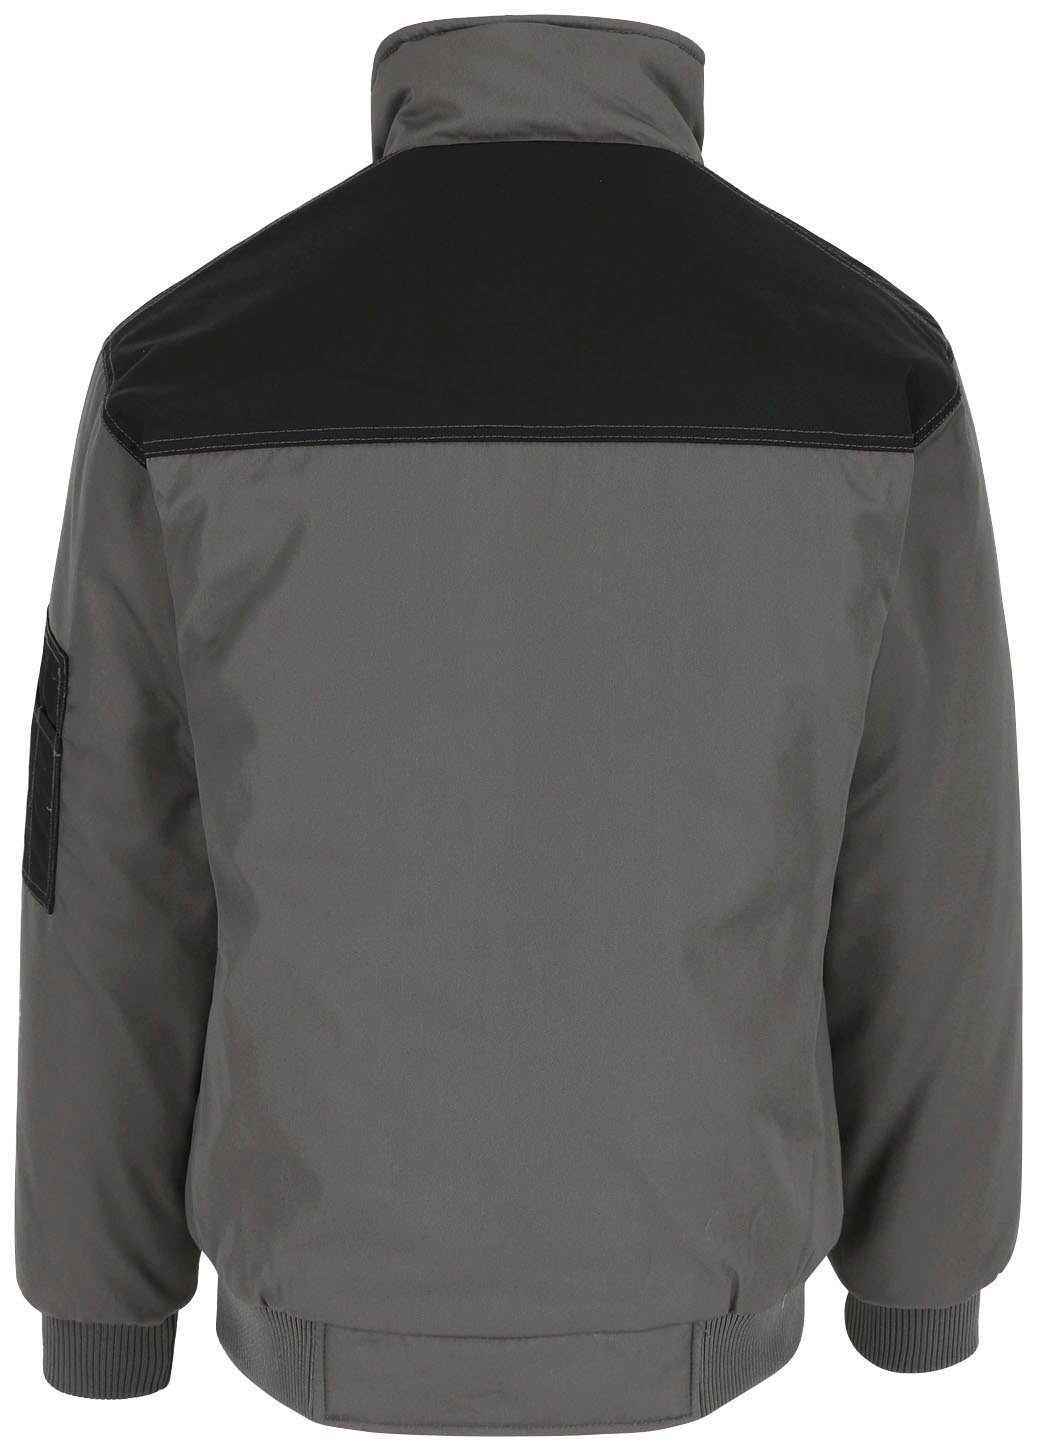 mit Fleece-Kragen, Wasserabweisend Taschen, viele grau Arbeitsjacke Jacke Farben Typhon viele robust, Herock